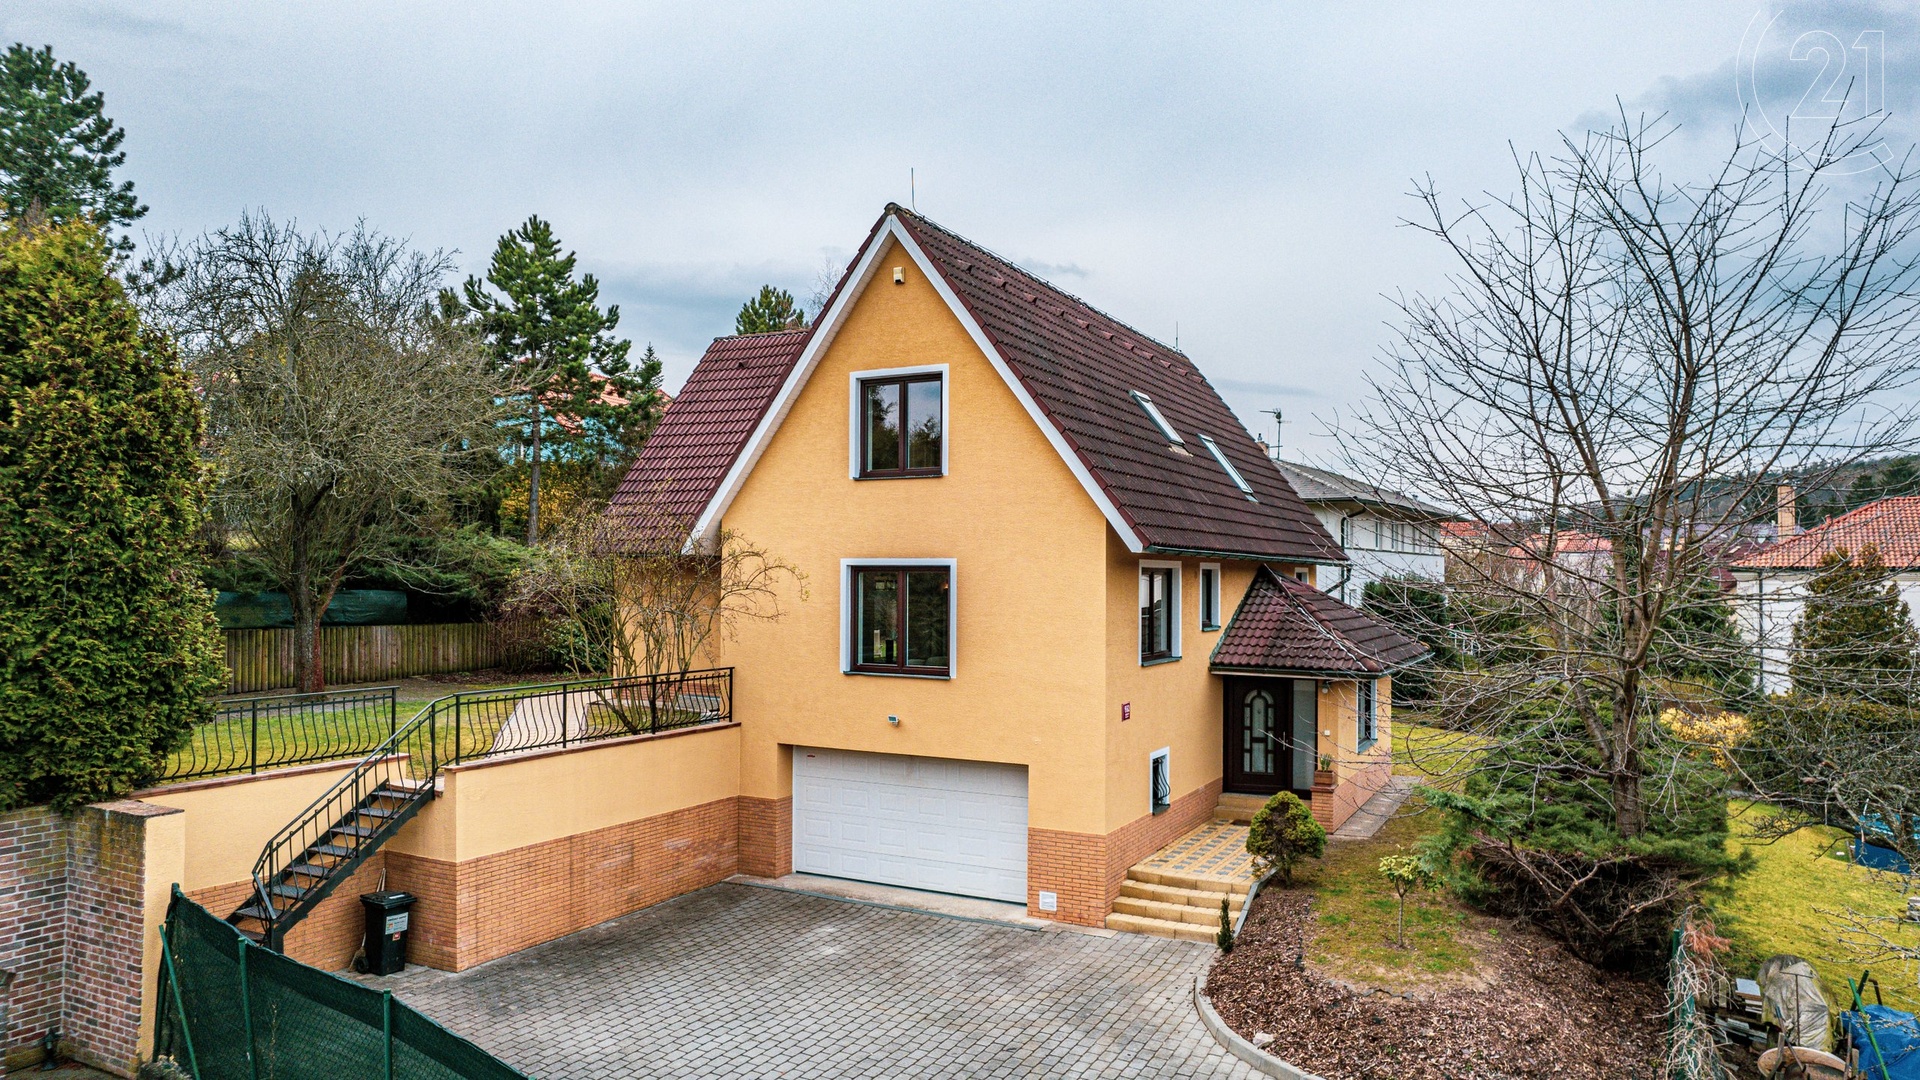 Prodej krásného rodinného domu se zahradou v  Praze - Nebušicích o užitné ploše 304 m²